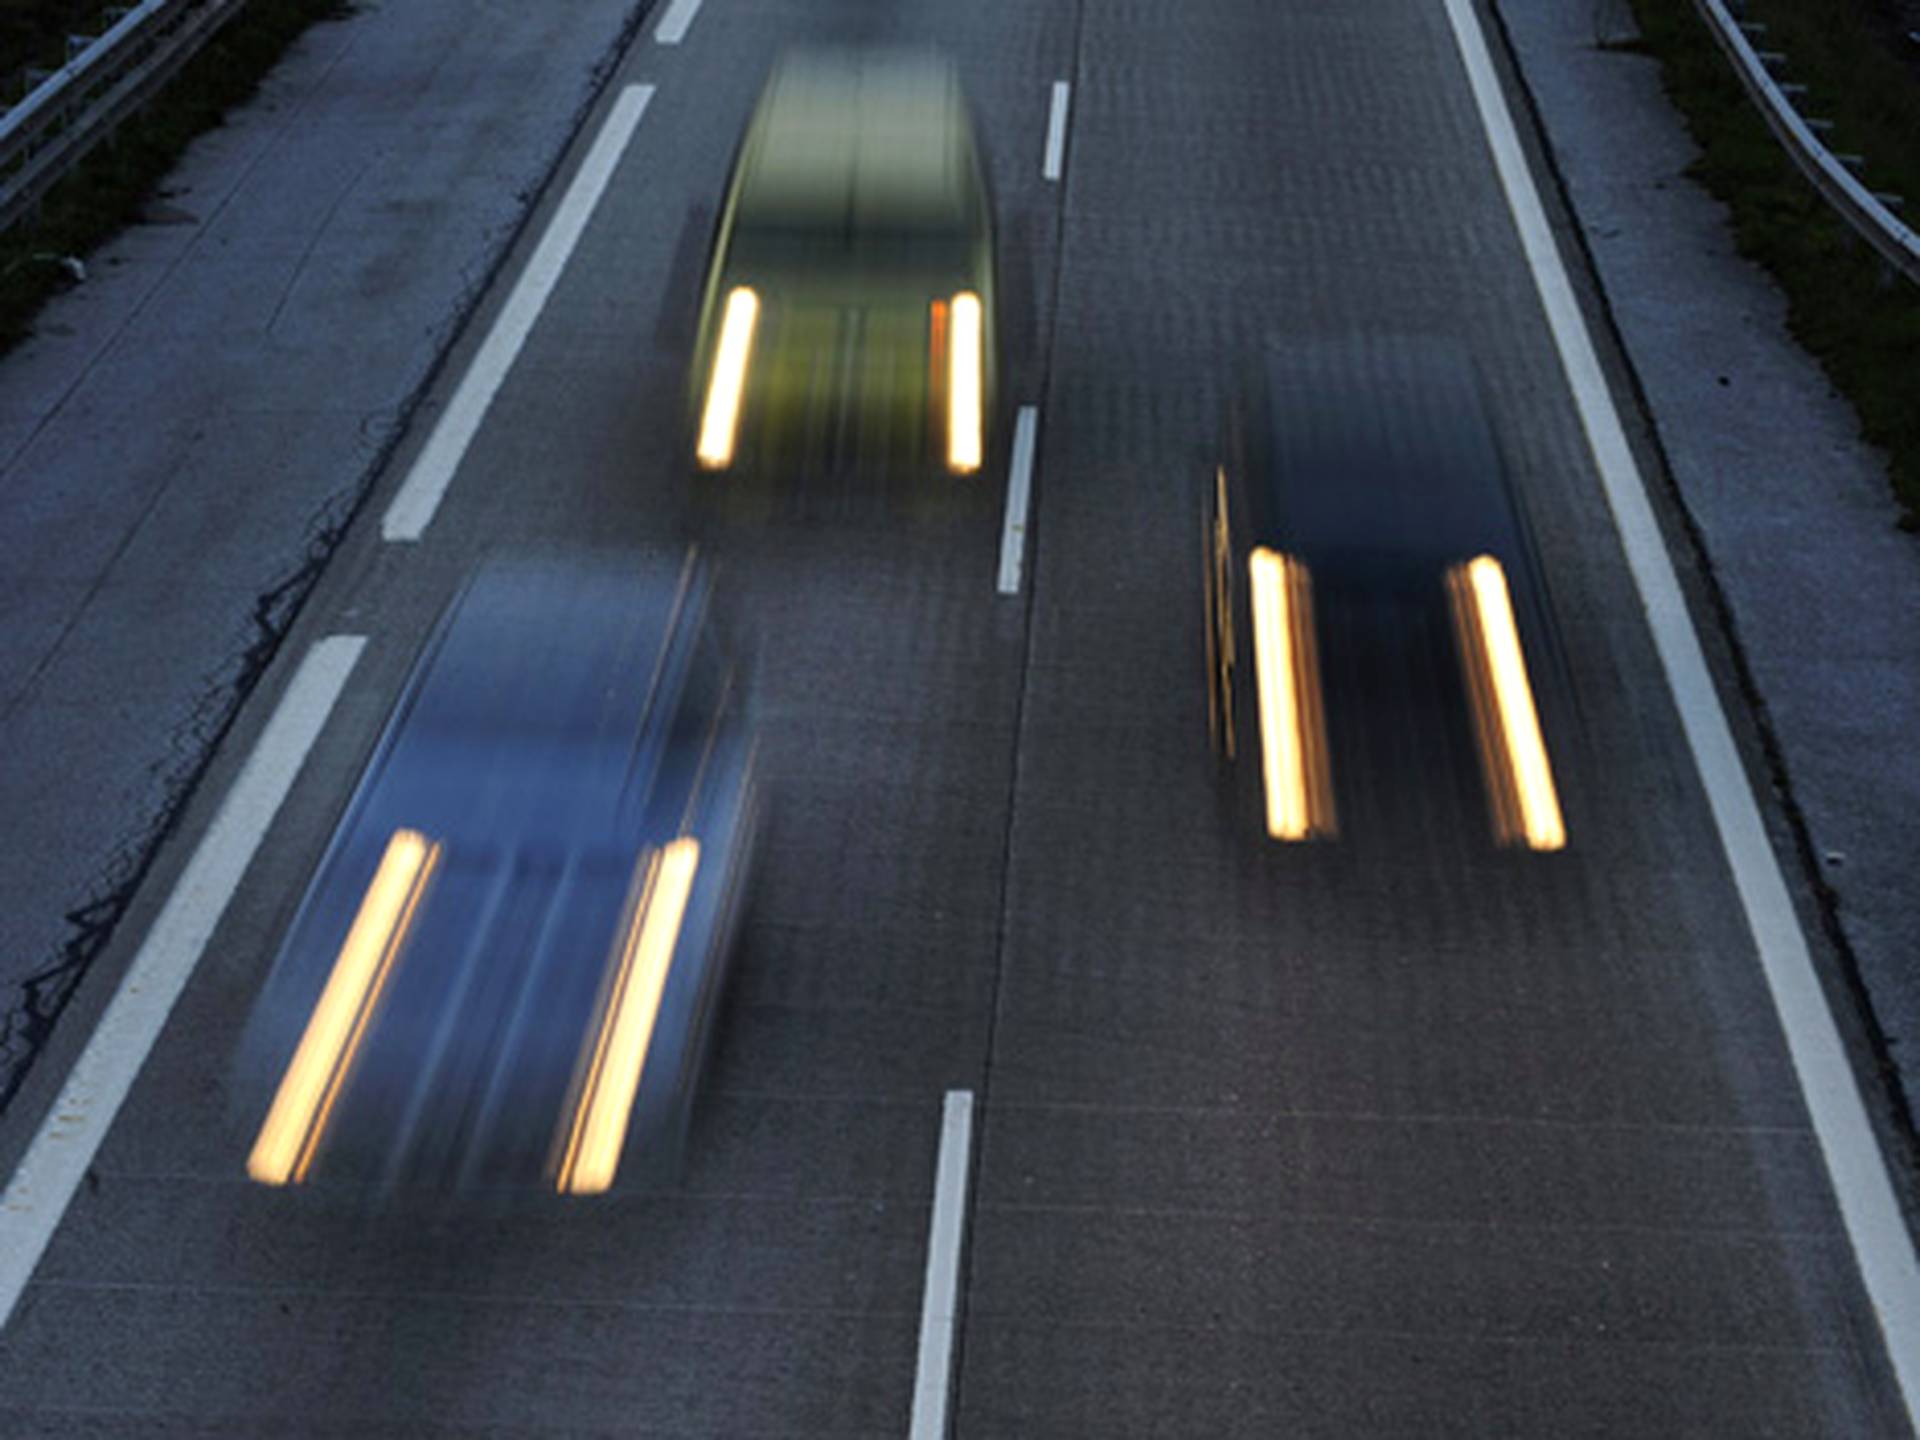 Laillista nopeutta ajaneille on jaettu sakkoja jopa 20 km/h -ylinopeudesta.